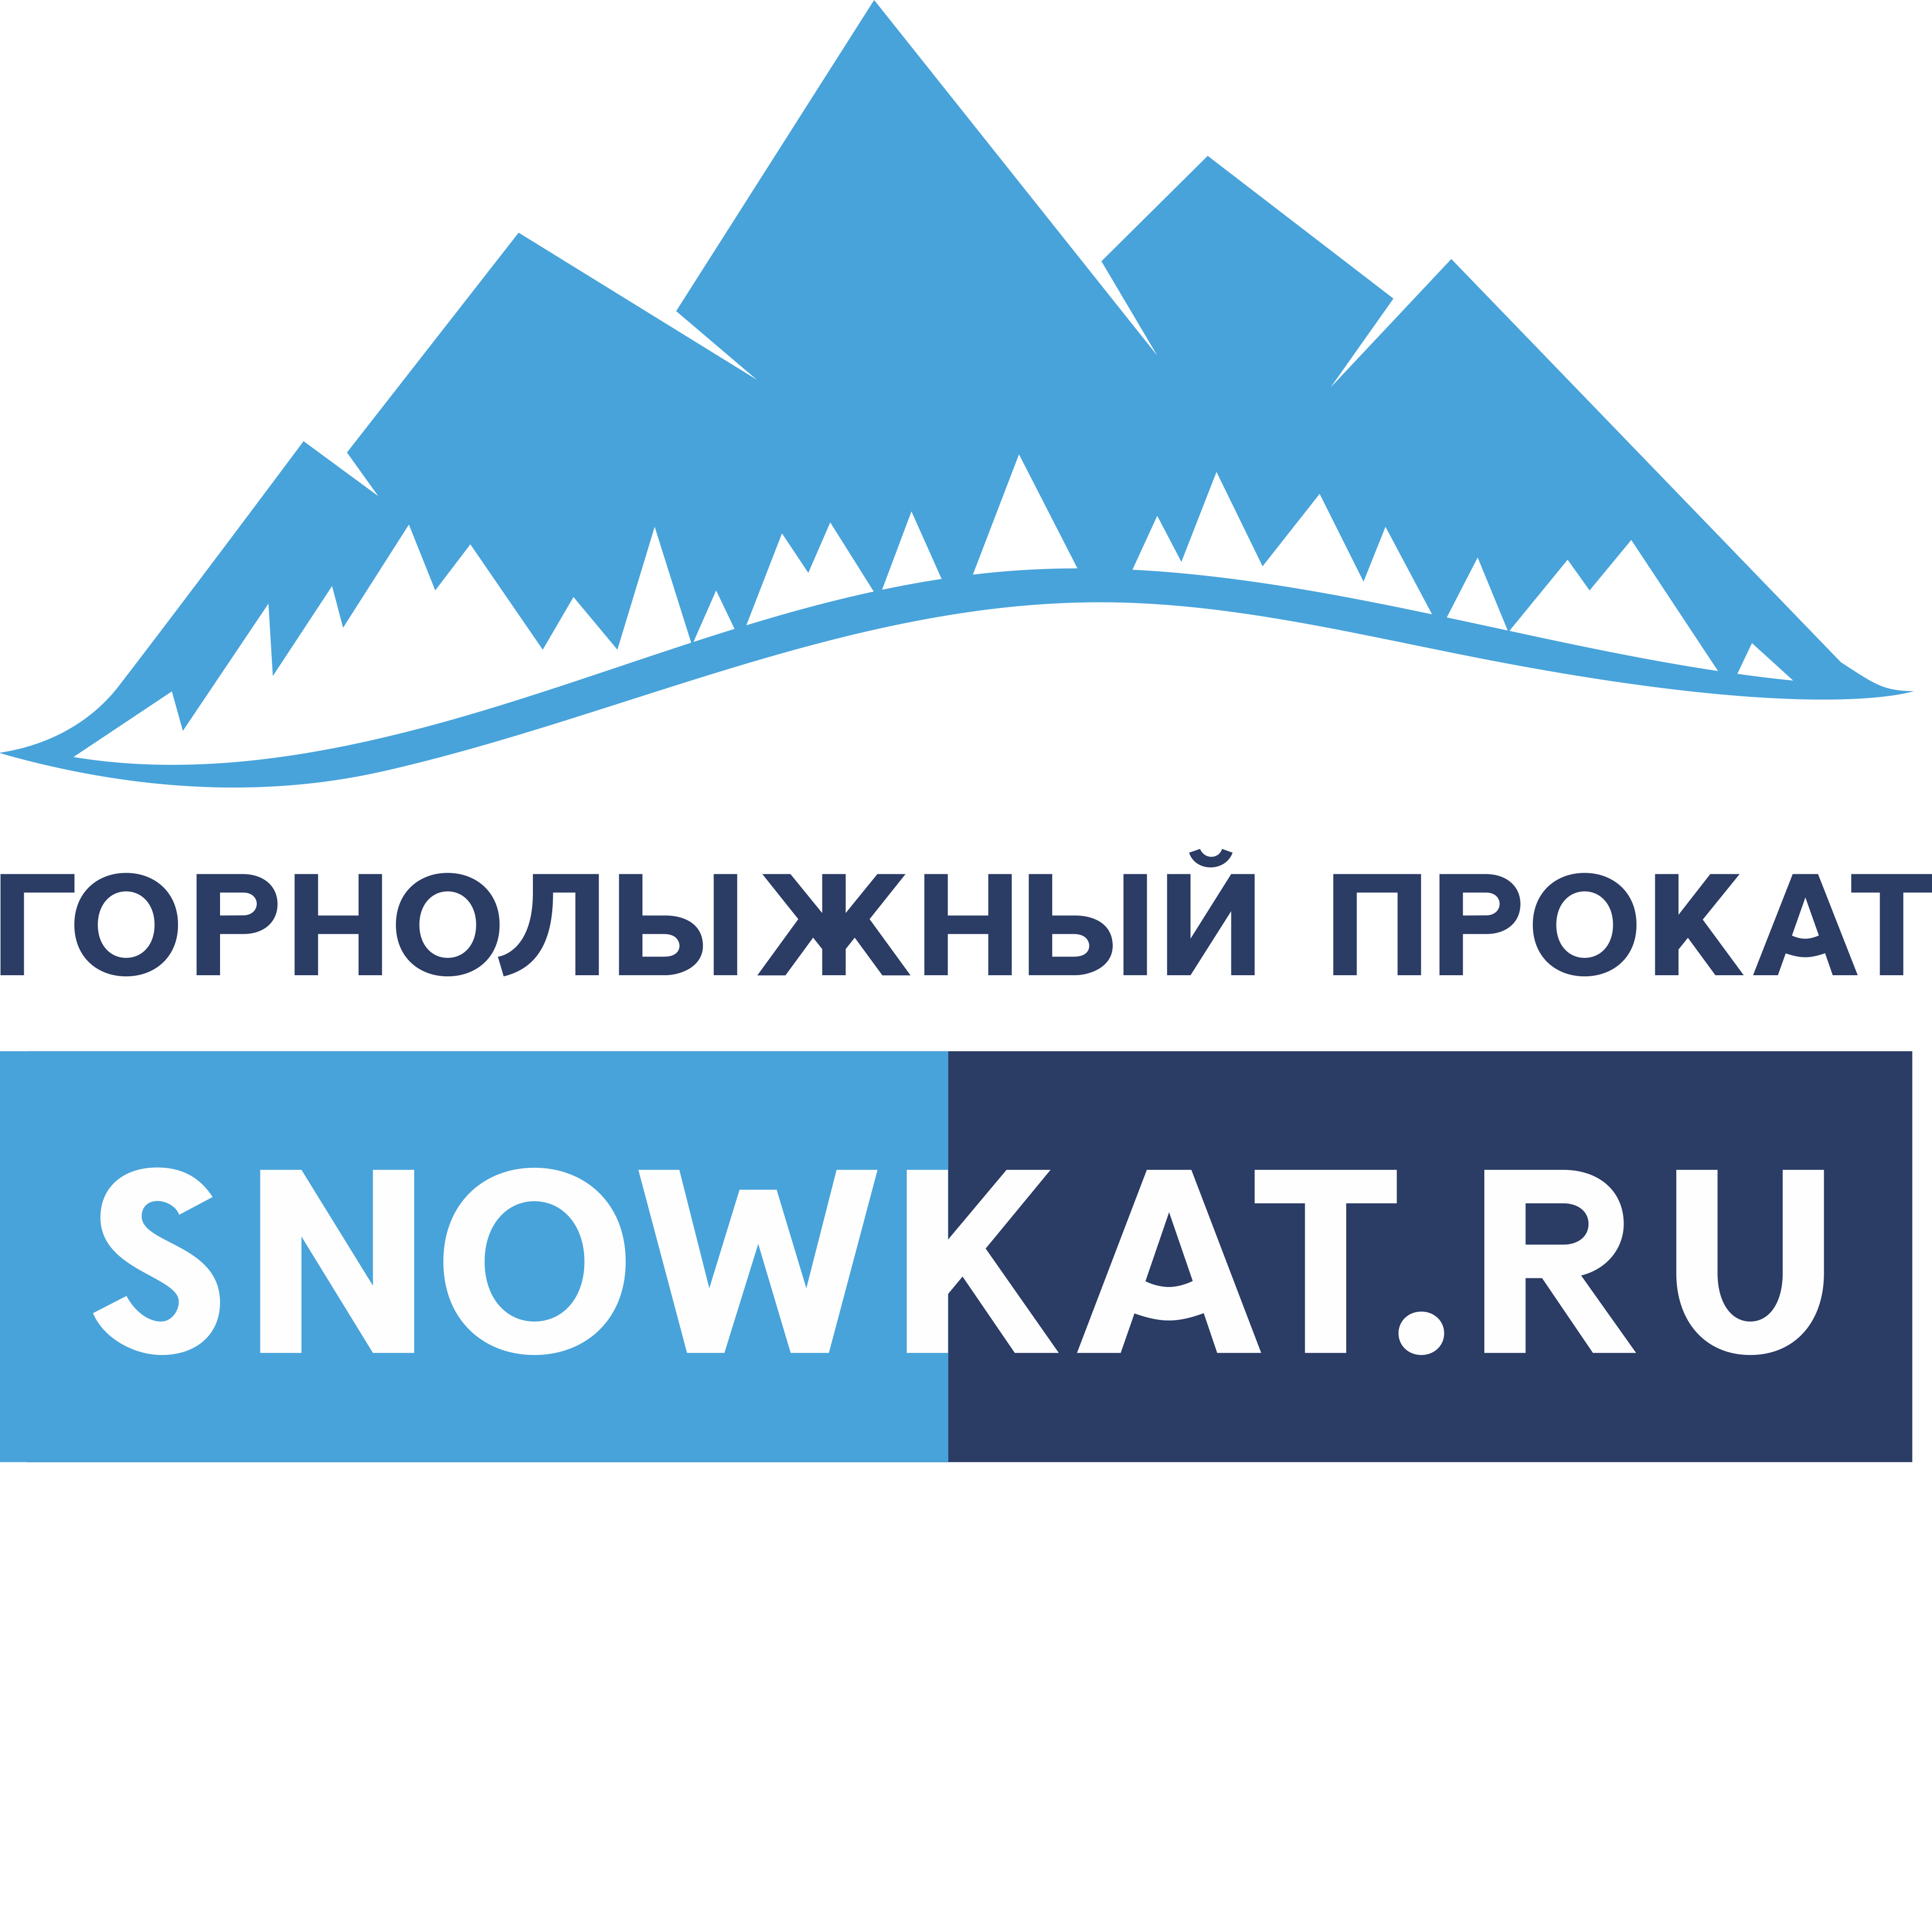 Snowkat.ru